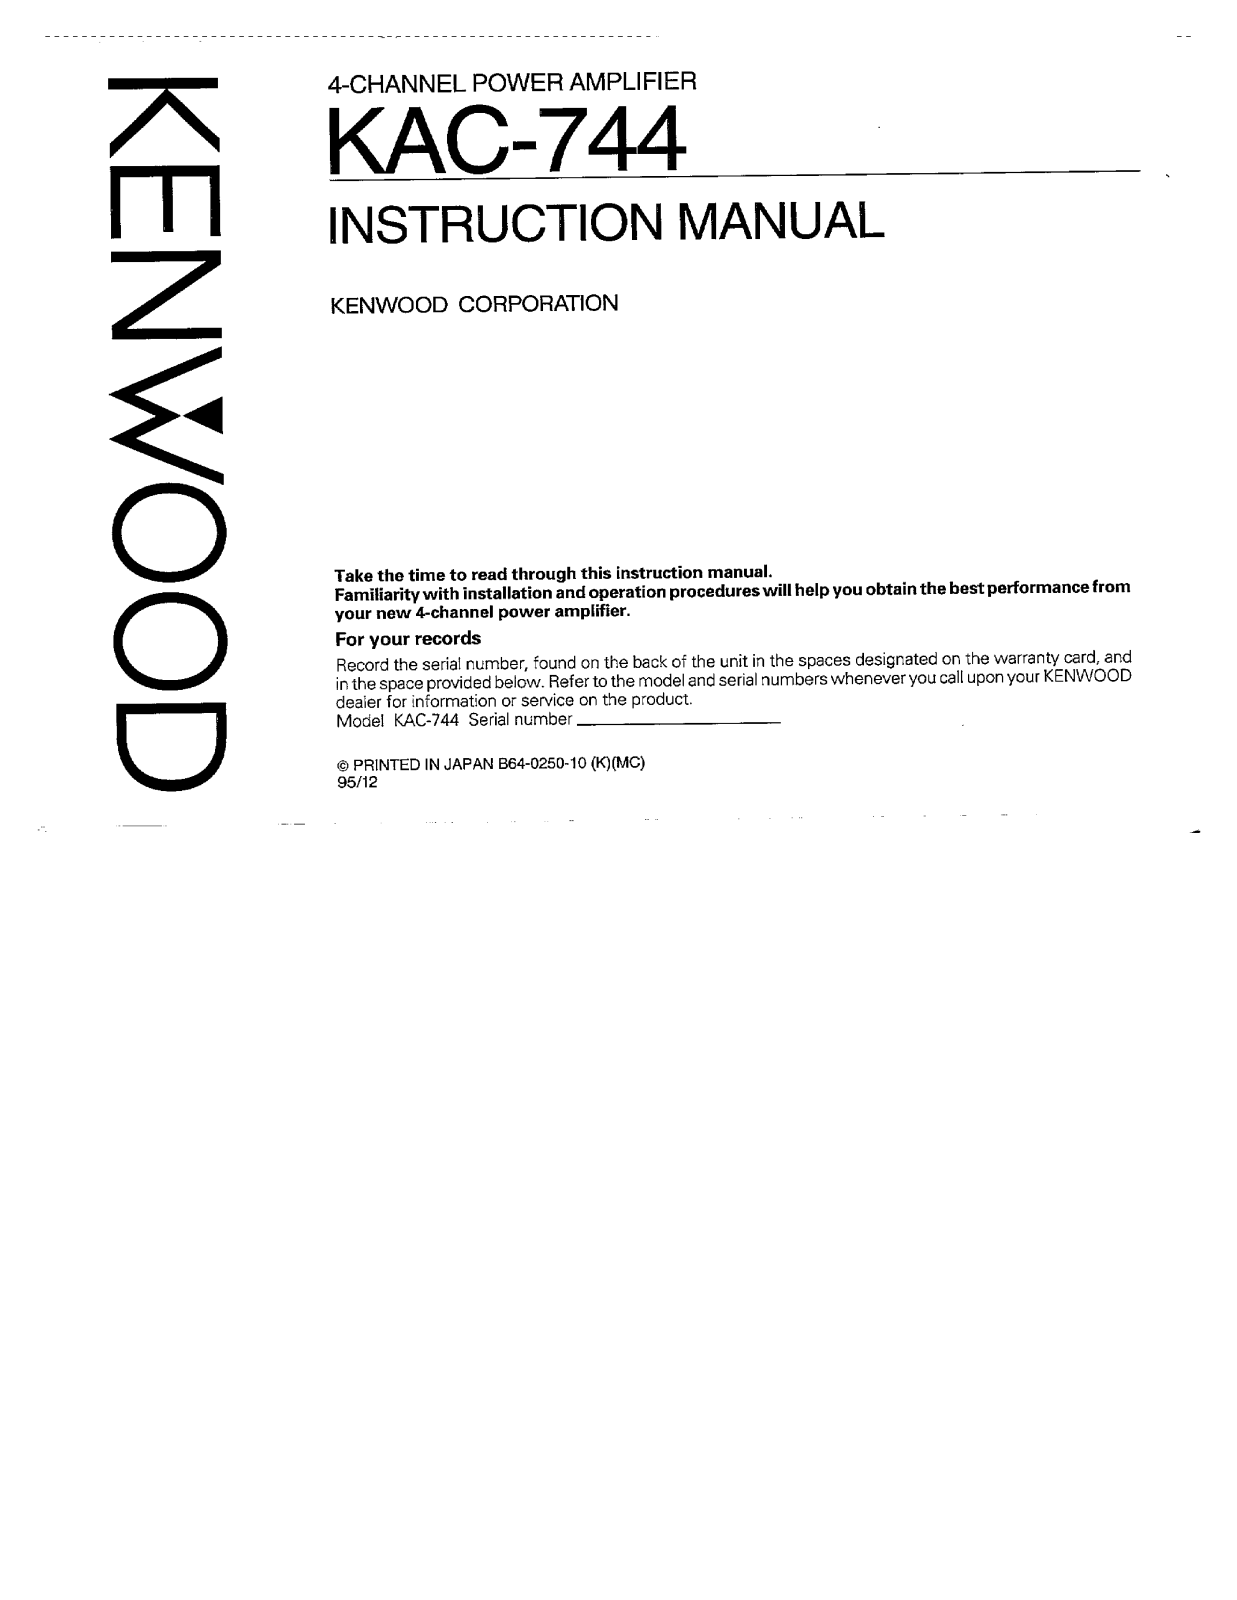 Kenwood KAC-744 Owner's Manual